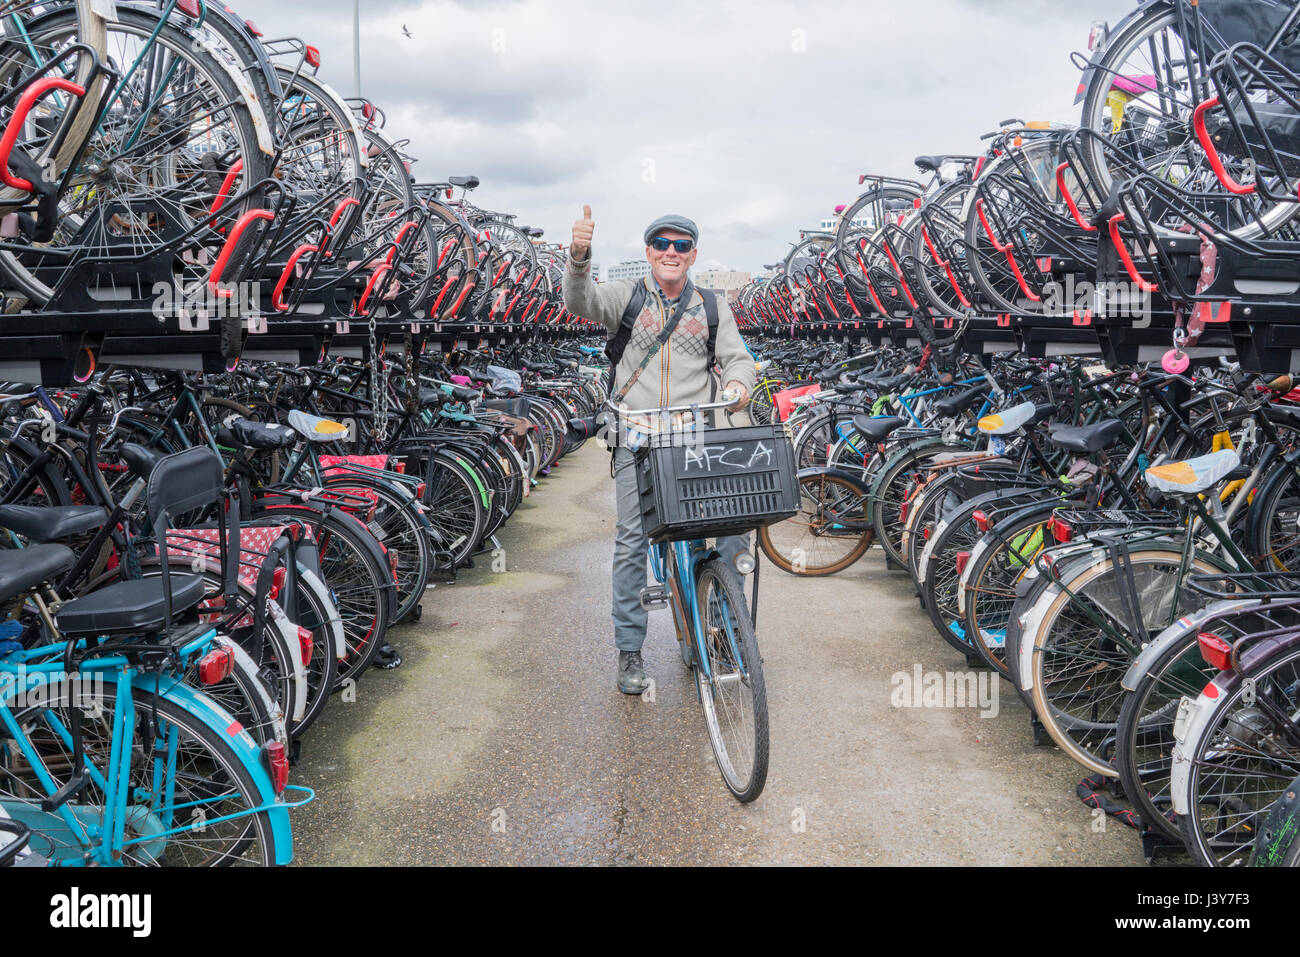 Radfahrer auf dem Fahrrad Blick in die Kamera geben Daumen nach oben, Amsterdam, Niederlande Stockfoto